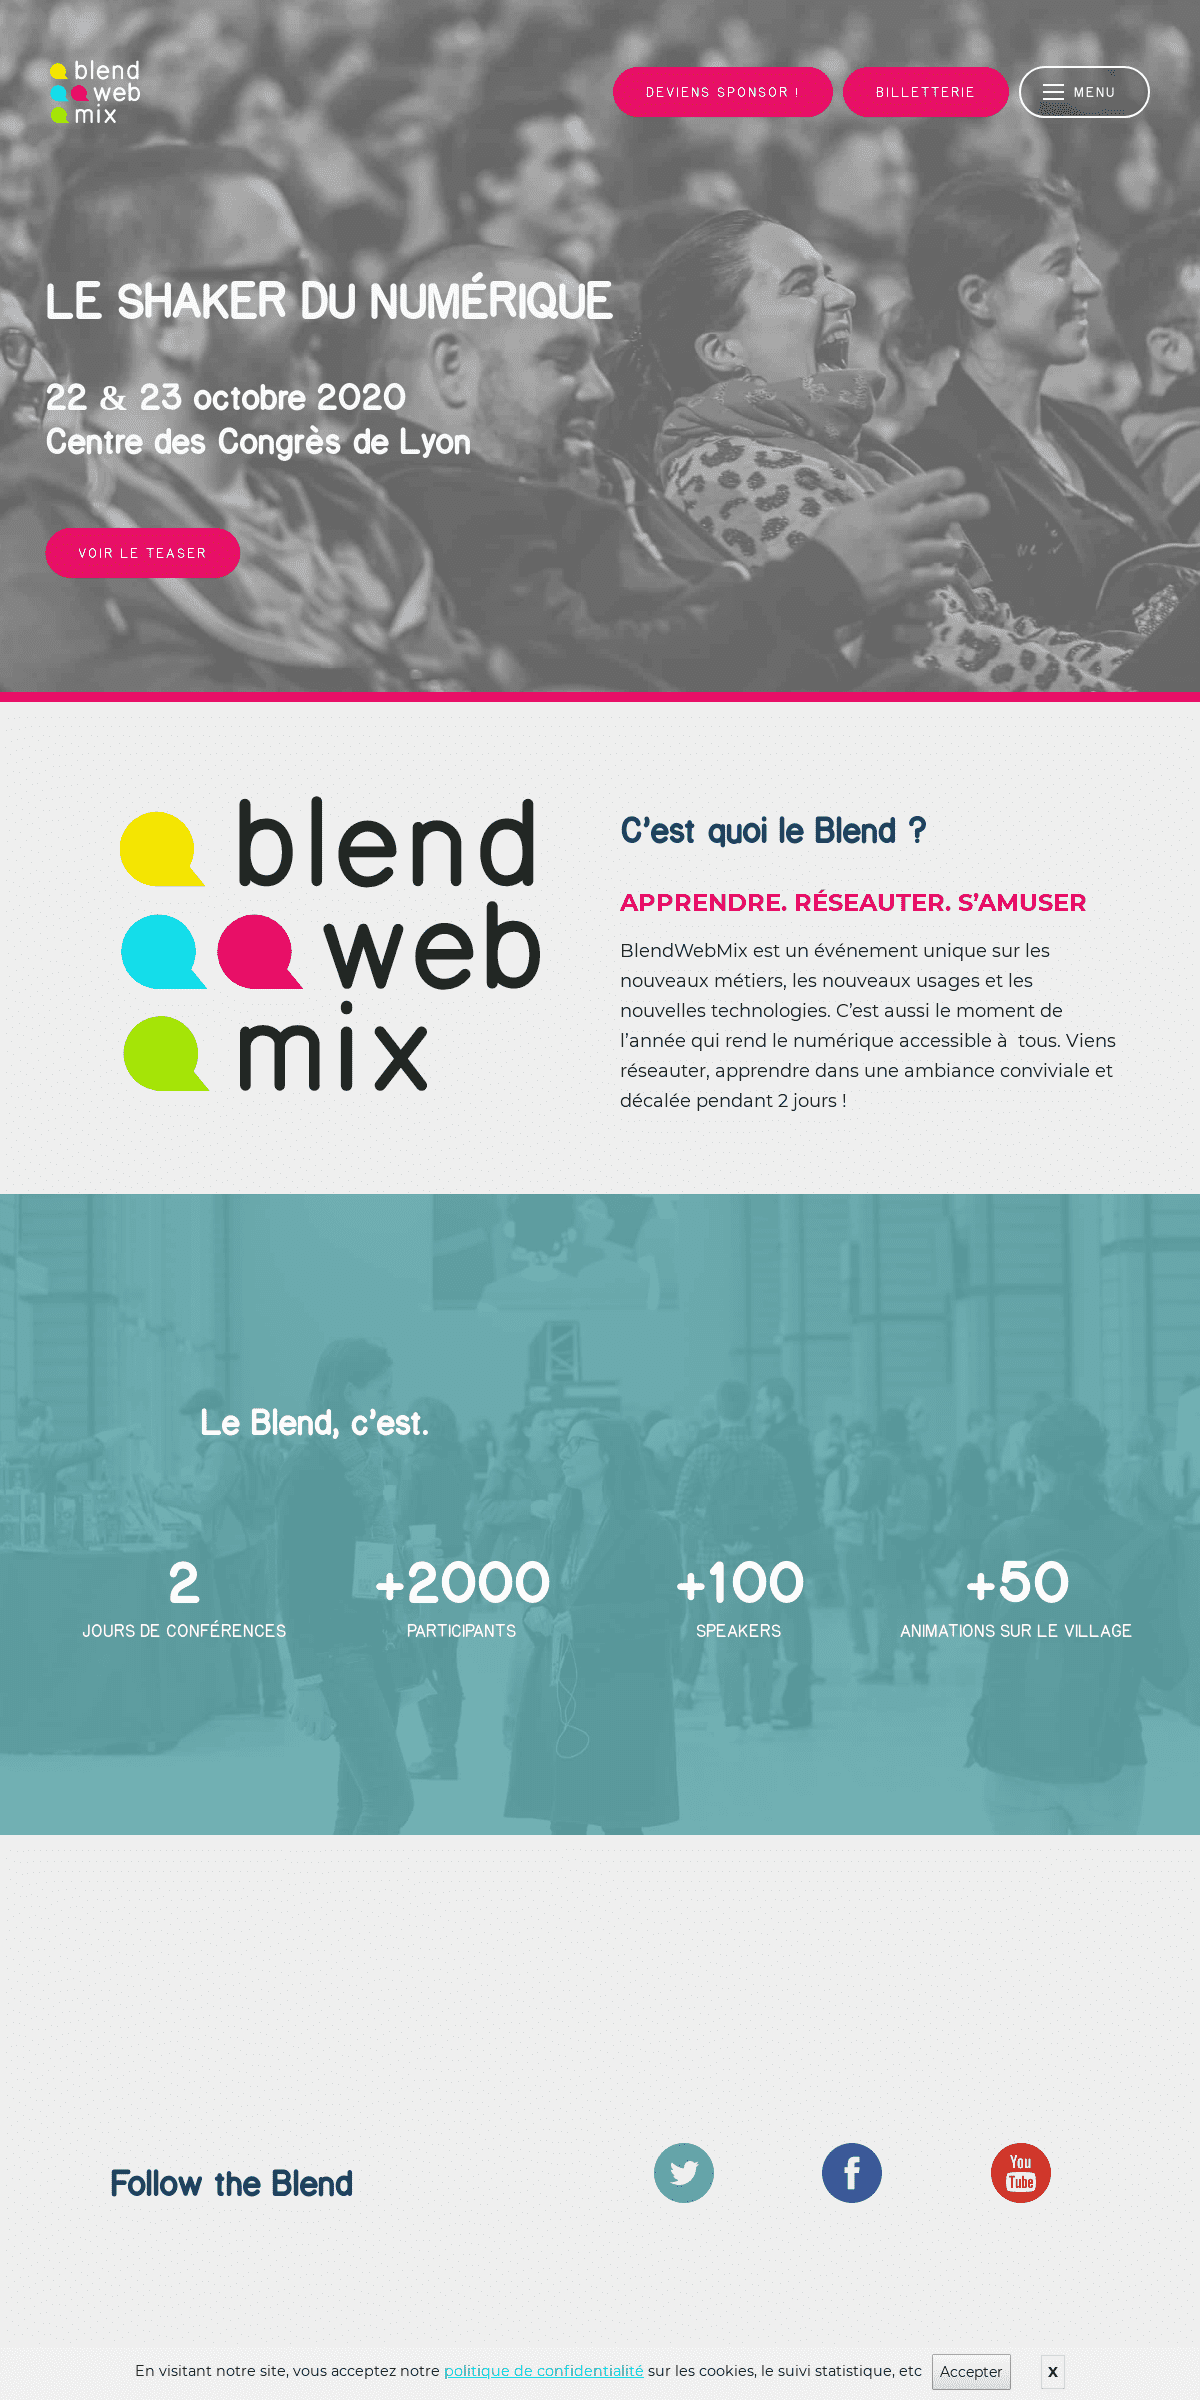 A complete backup of blendwebmix.com